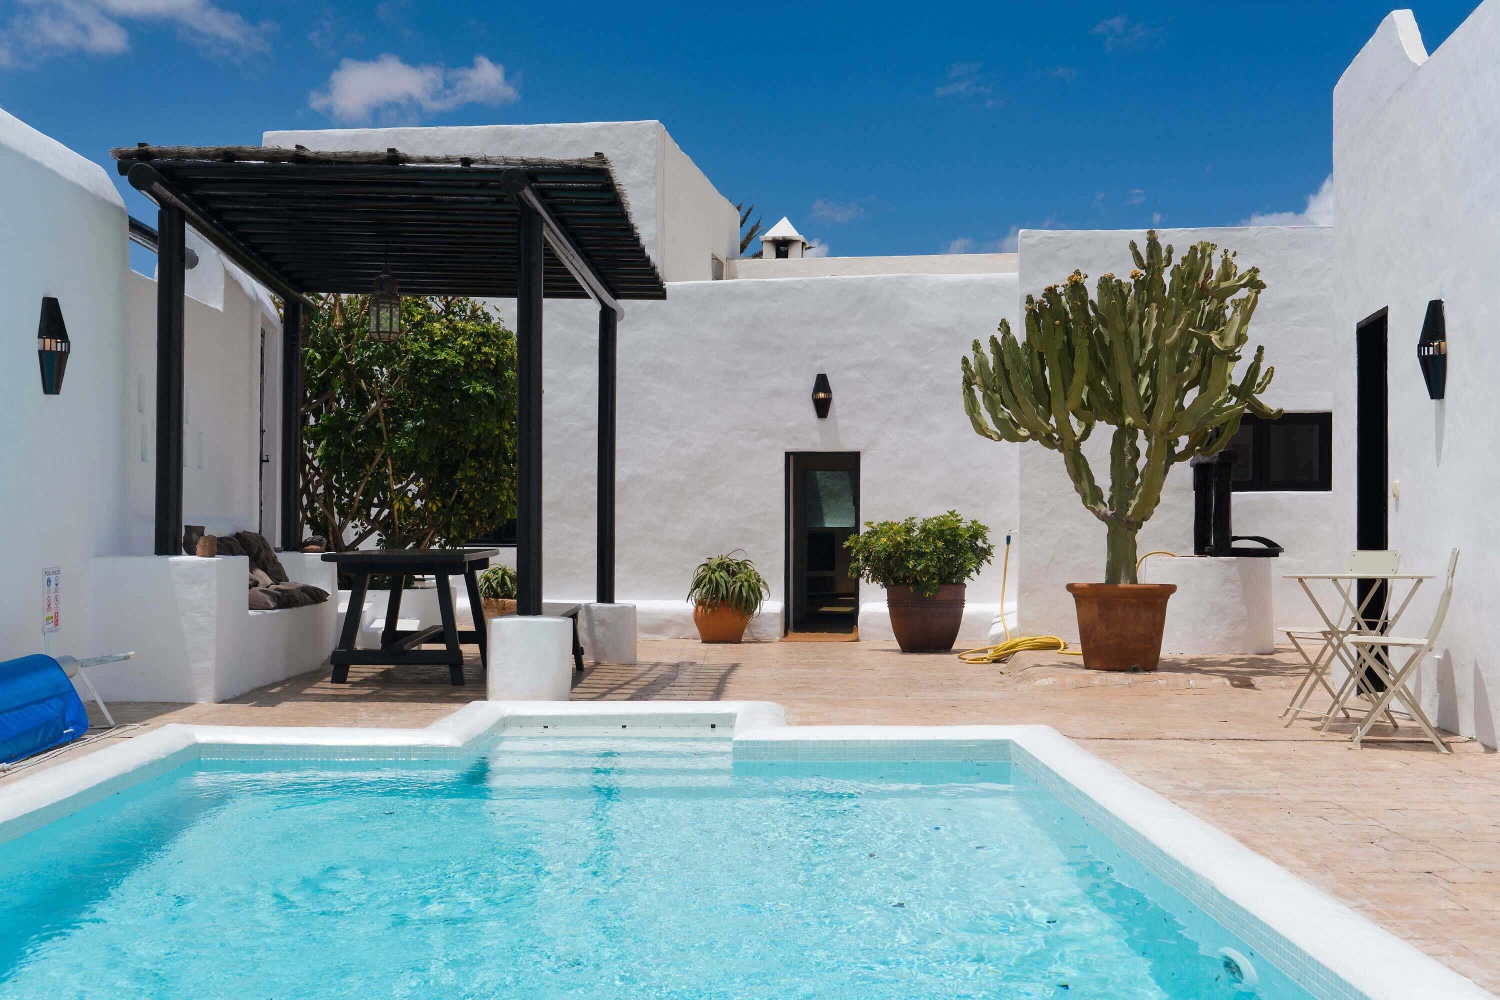 Ylellinen talo, jossa on oma lämmitetty uima-allas ja ihanteellinen paikka tutustua muihin Lanzaroten alueisiin